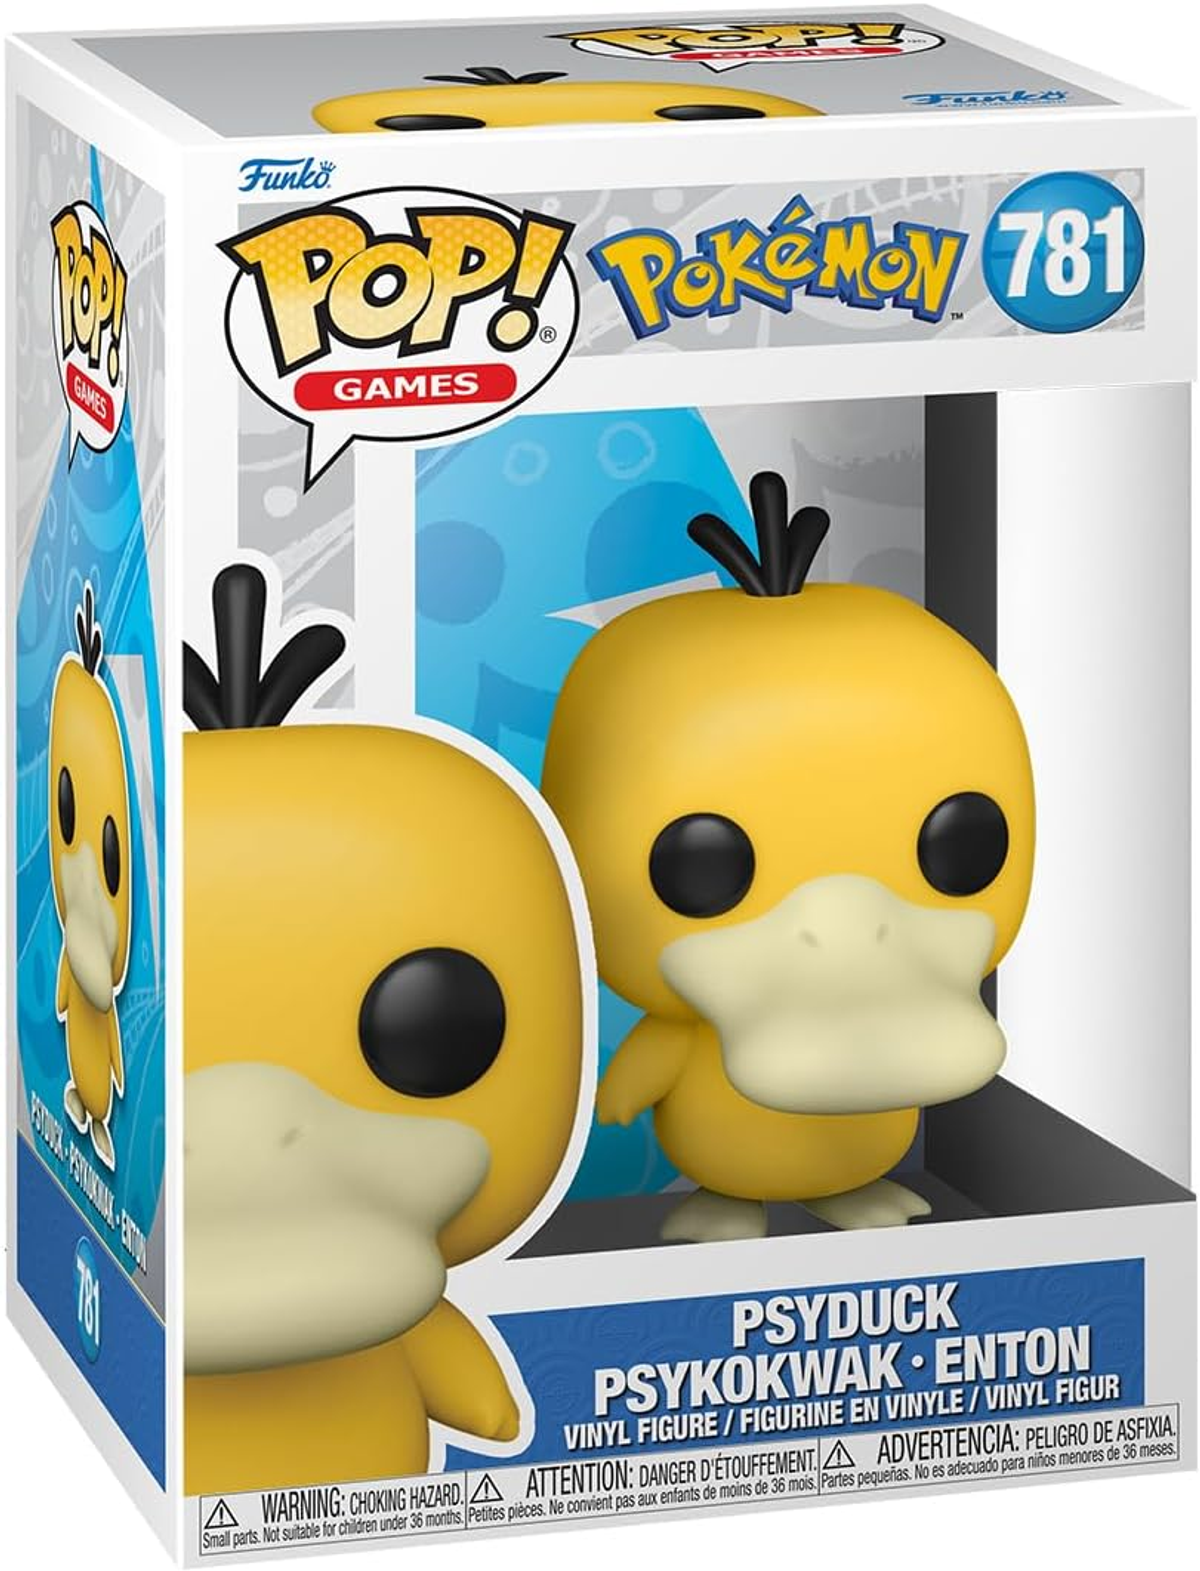 - - Psyduck/Psykokwak Pokemon POP - Enton